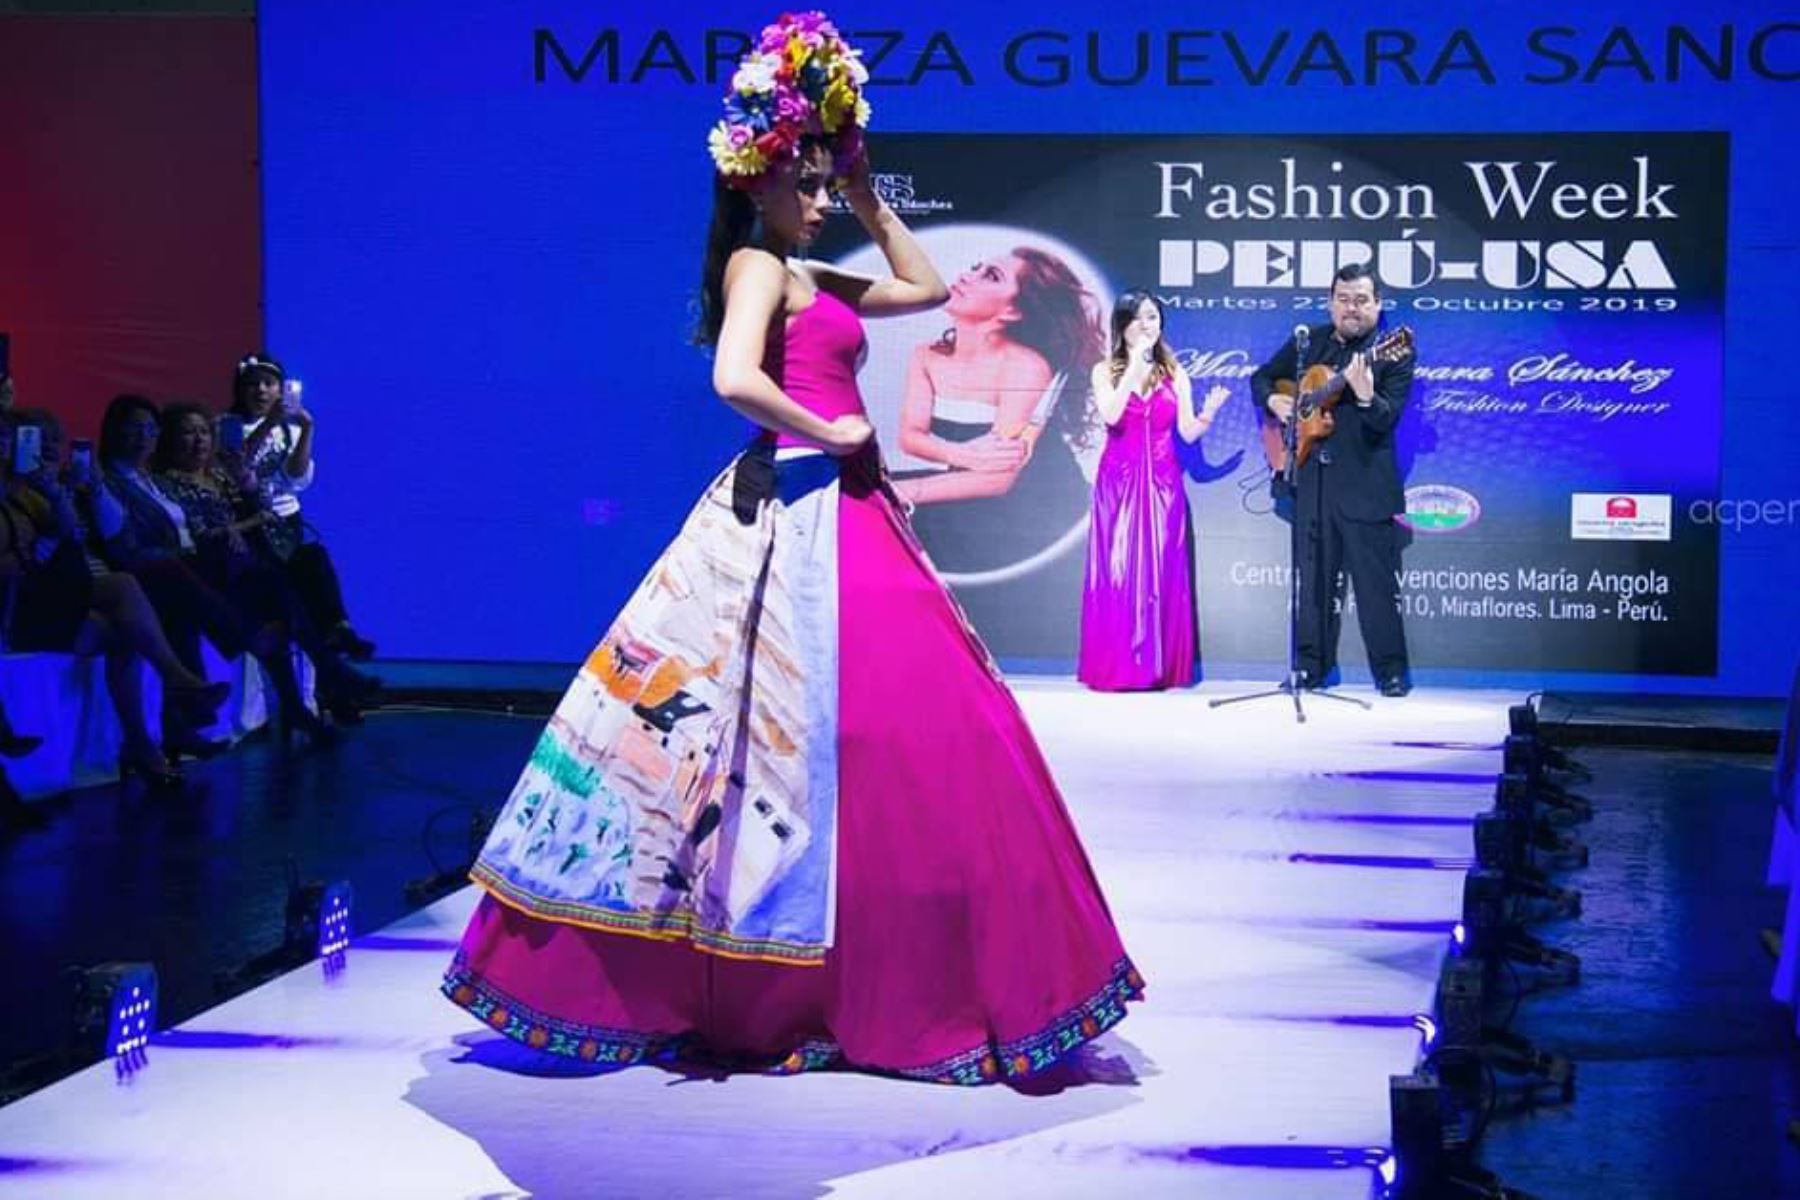 Diseños con motivos de Pomabamba (Áncash) impactaron en el Fashion Week Perú-USA 2019. Foto: ANDINA/Kamu Jara